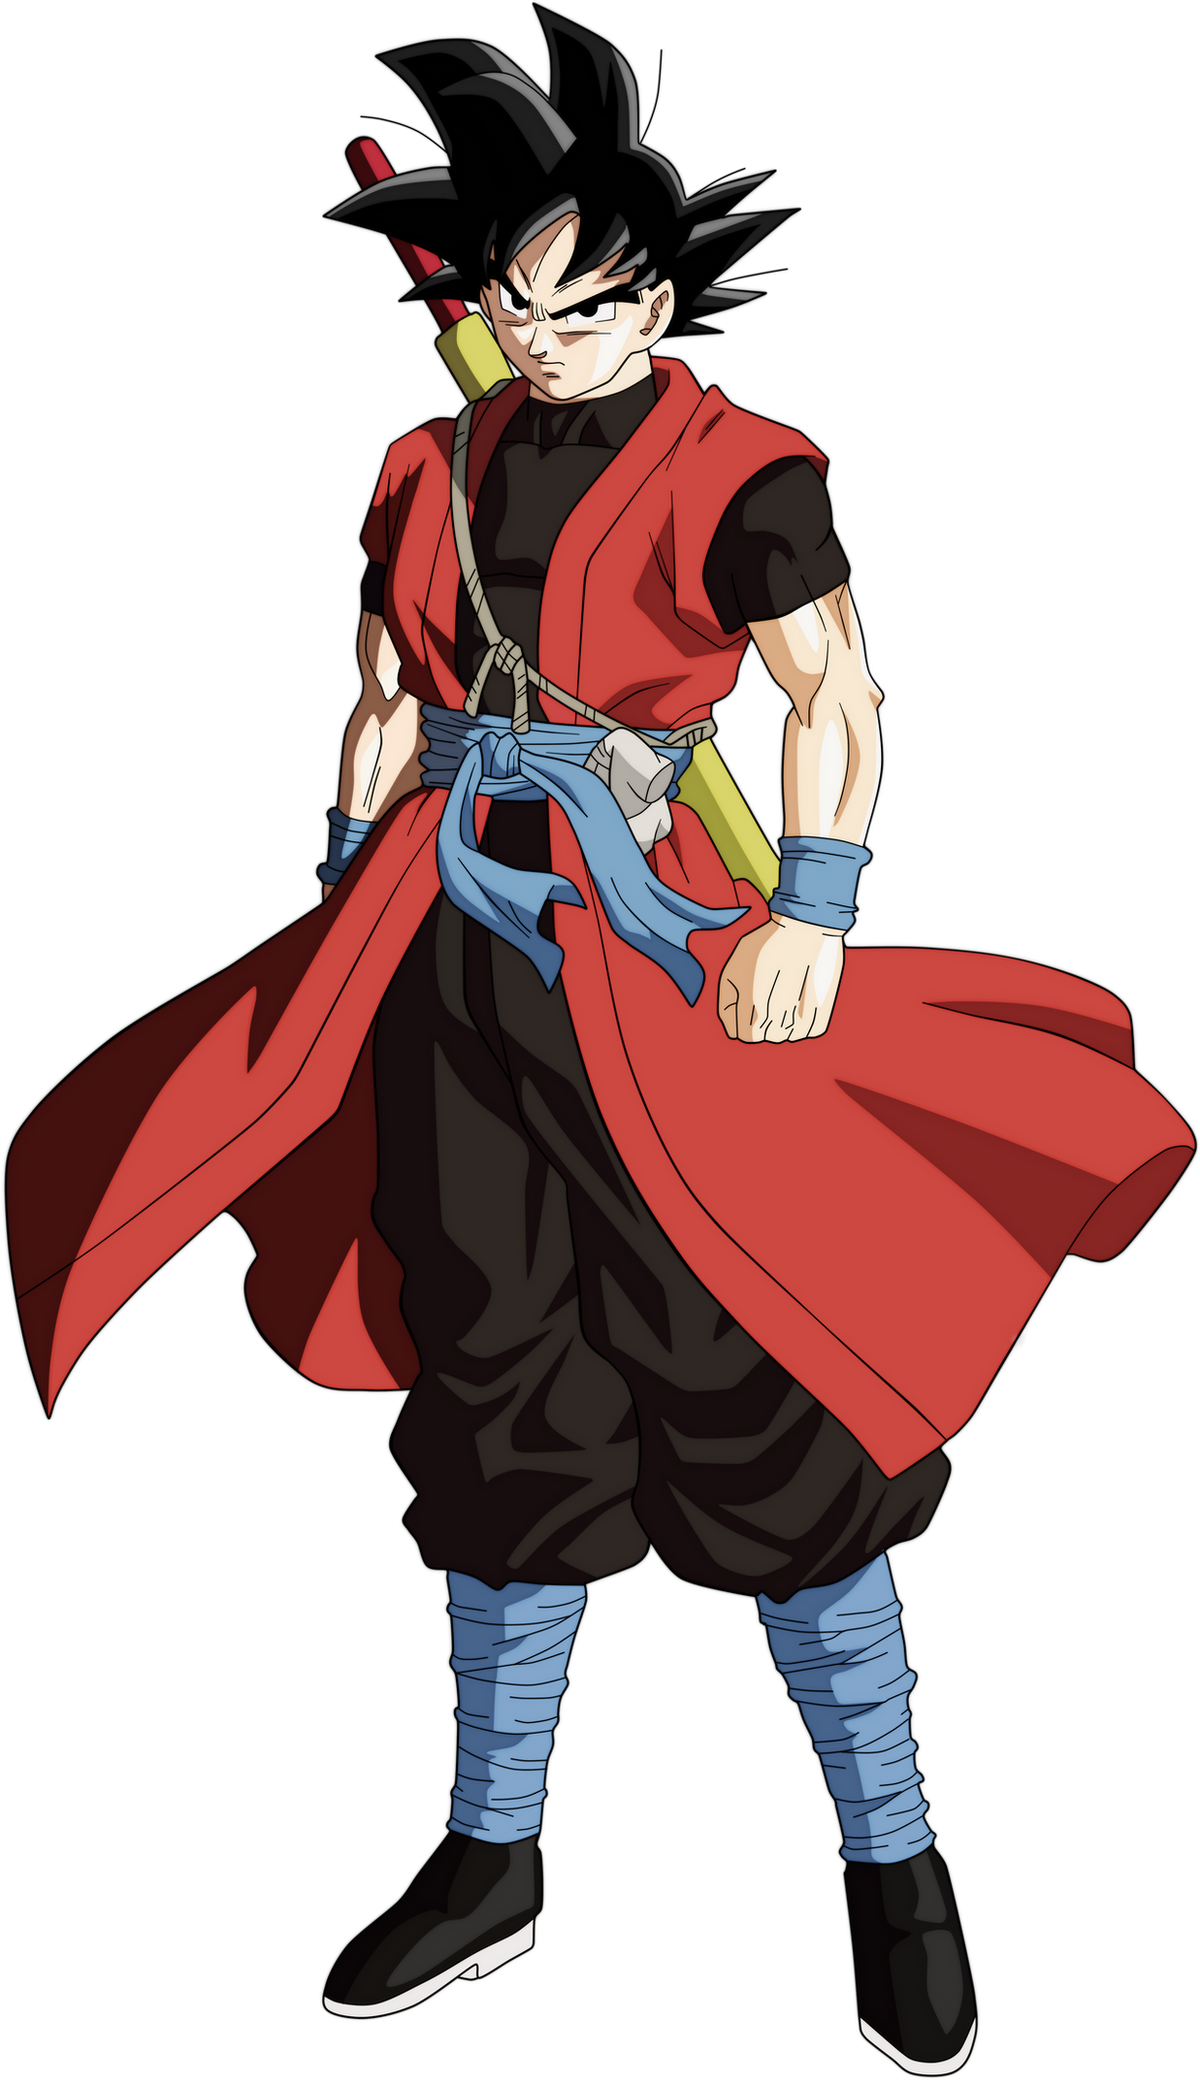 Who is Xeno Goku, Comp, Son Goku Naruto from Dragon Ball